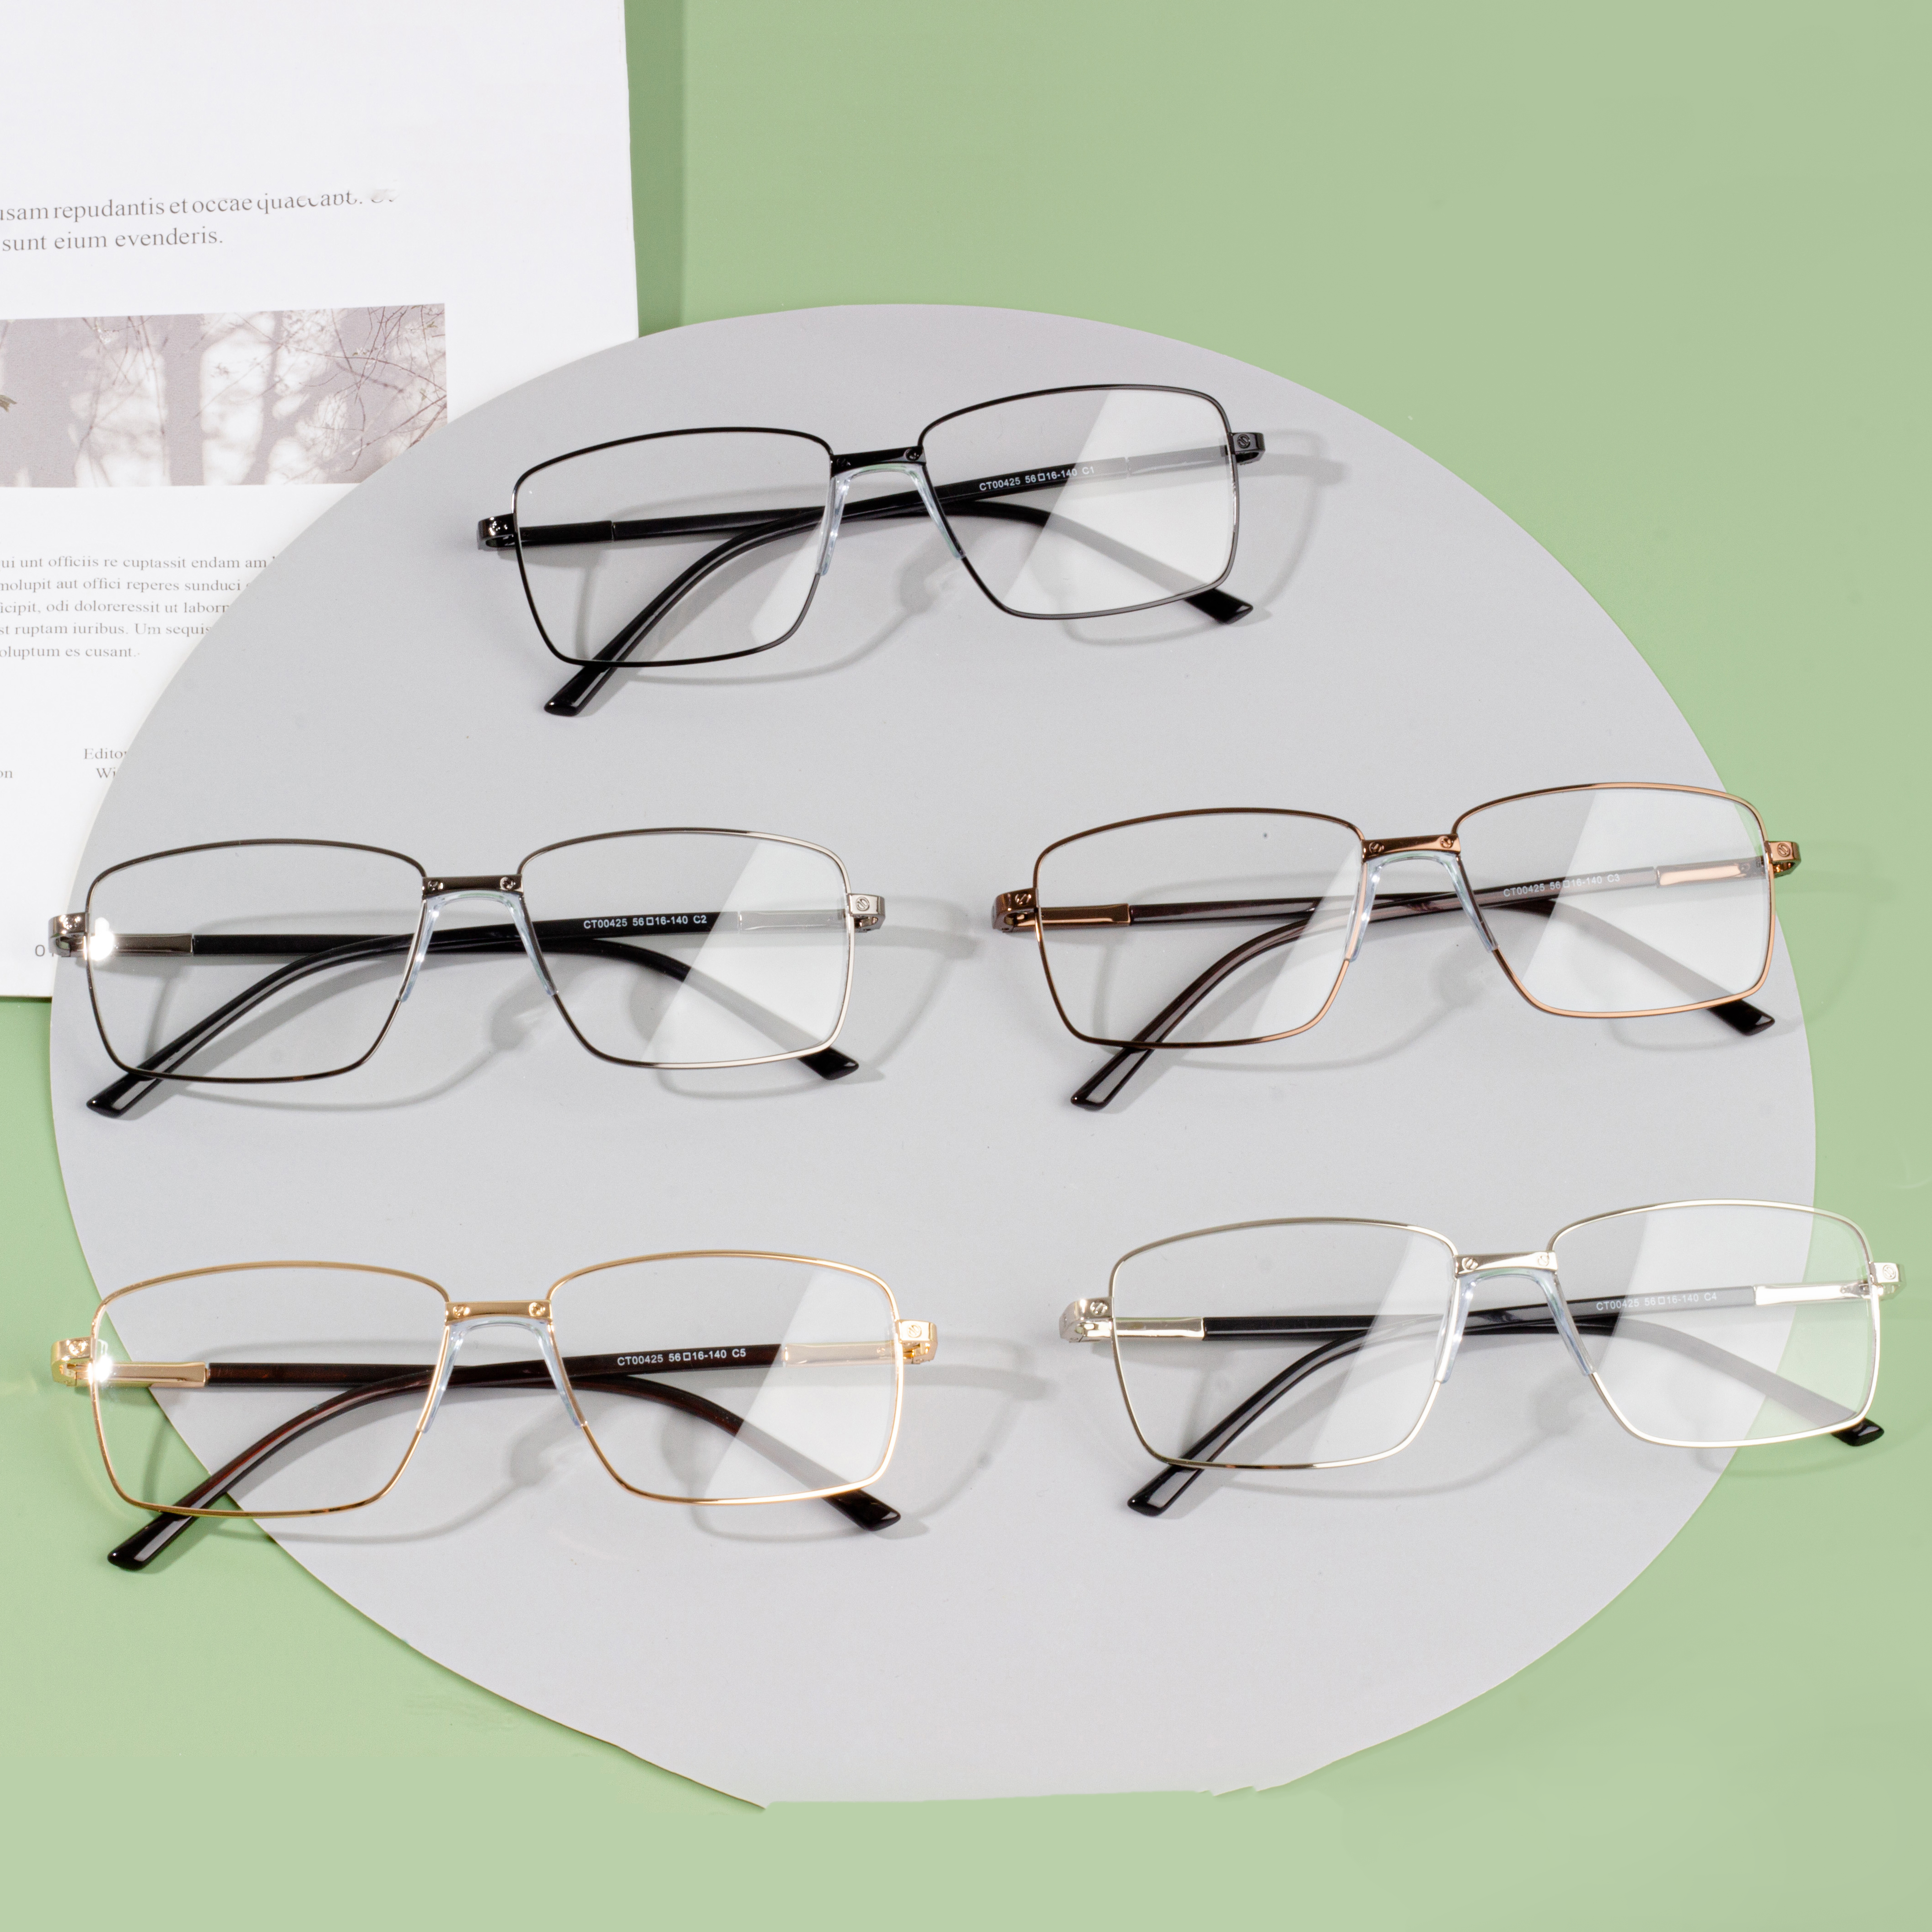 Veleprodajna cijena muških optičkih okvira za naočale